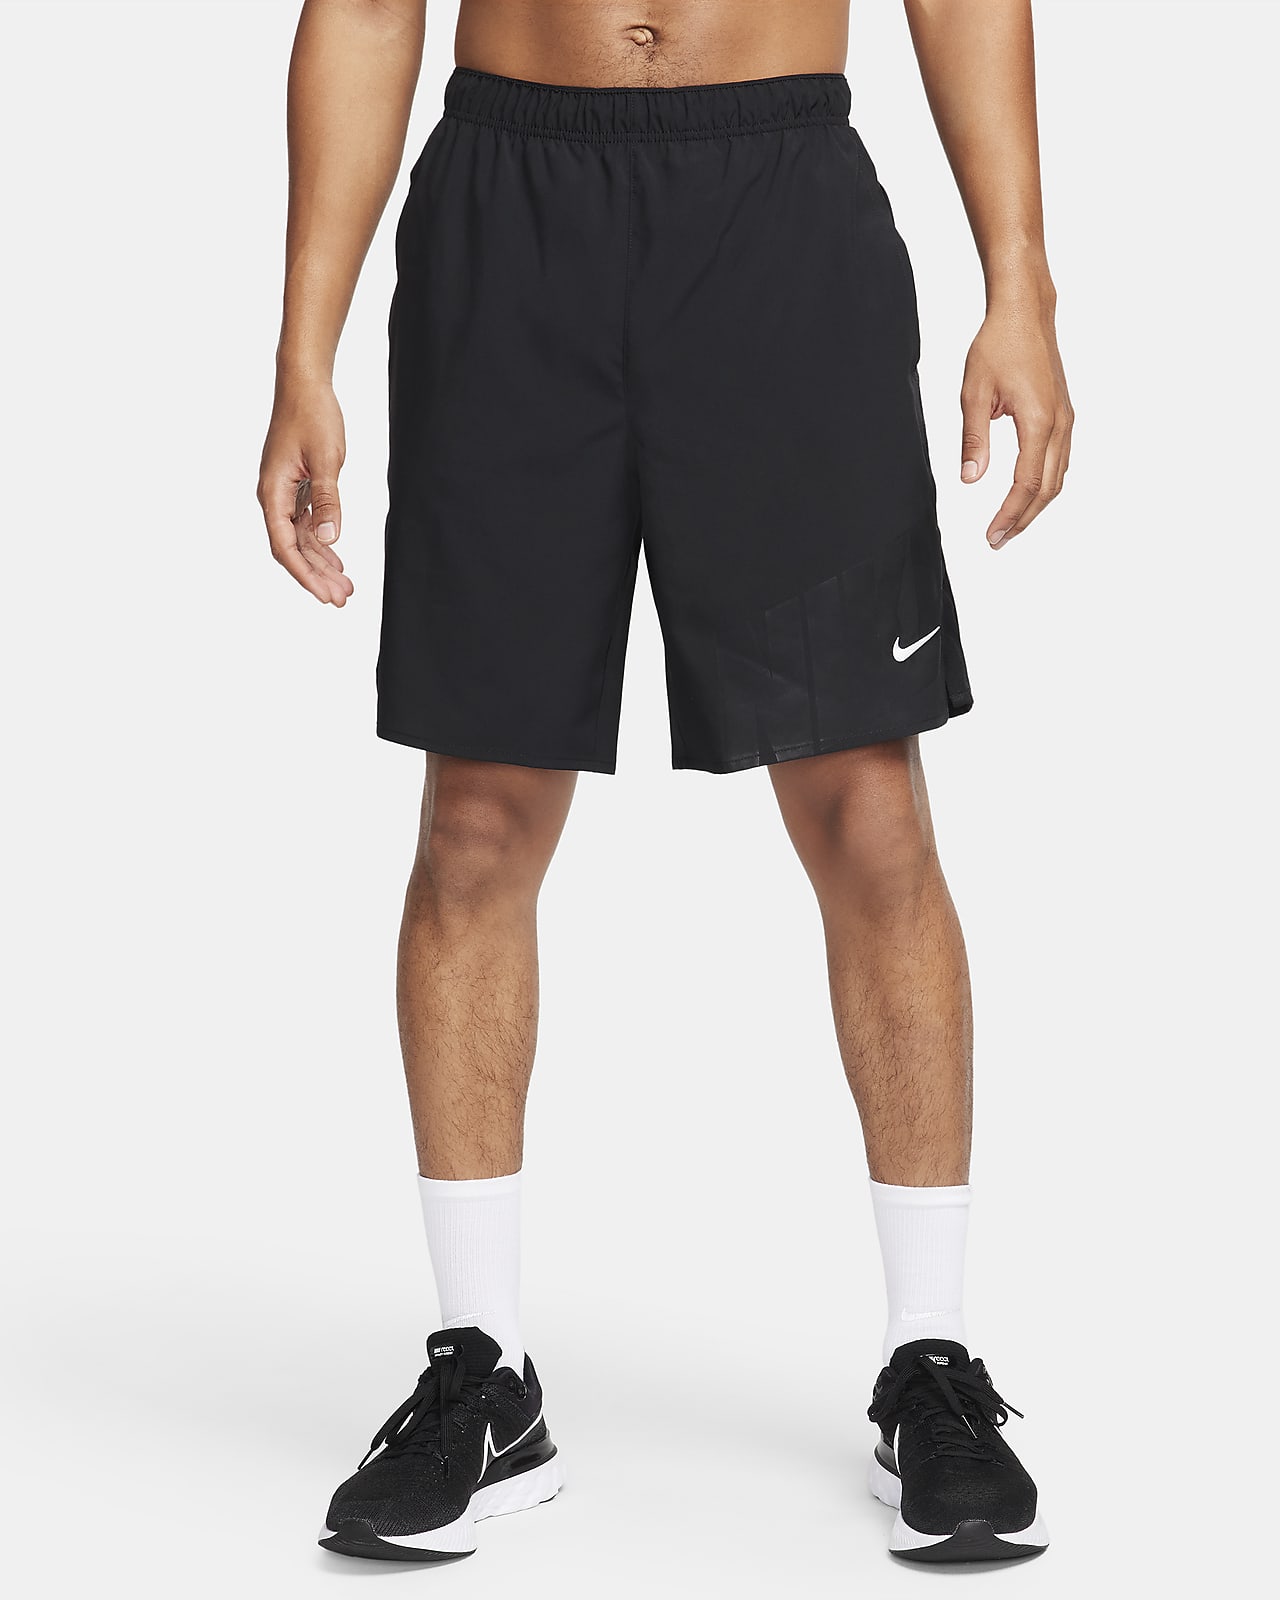 Nike Challenger Dri-FIT 23 cm-es, bélés nélküli férfi futórövidnadrág